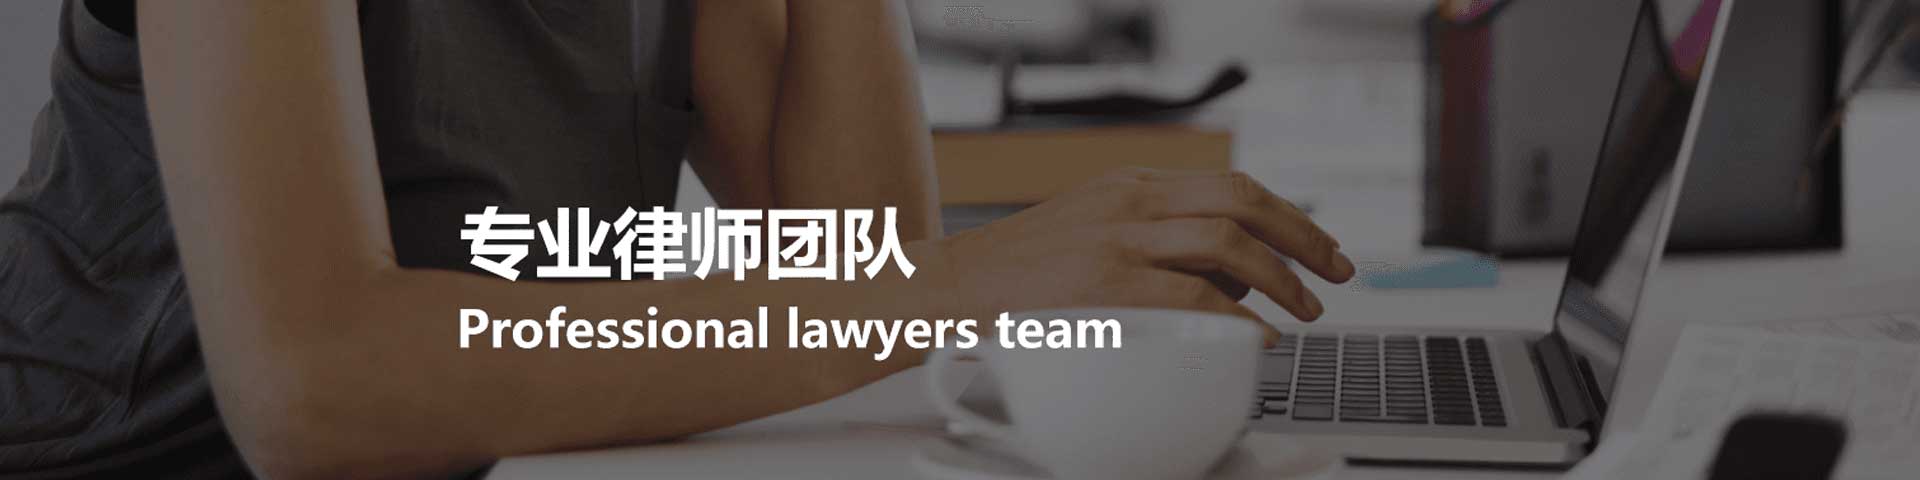 杭州律师事务所是专业的法律咨询服务平台，丰富的律师顾问经验，专业快捷的律师团队，帮您一对一解答法律